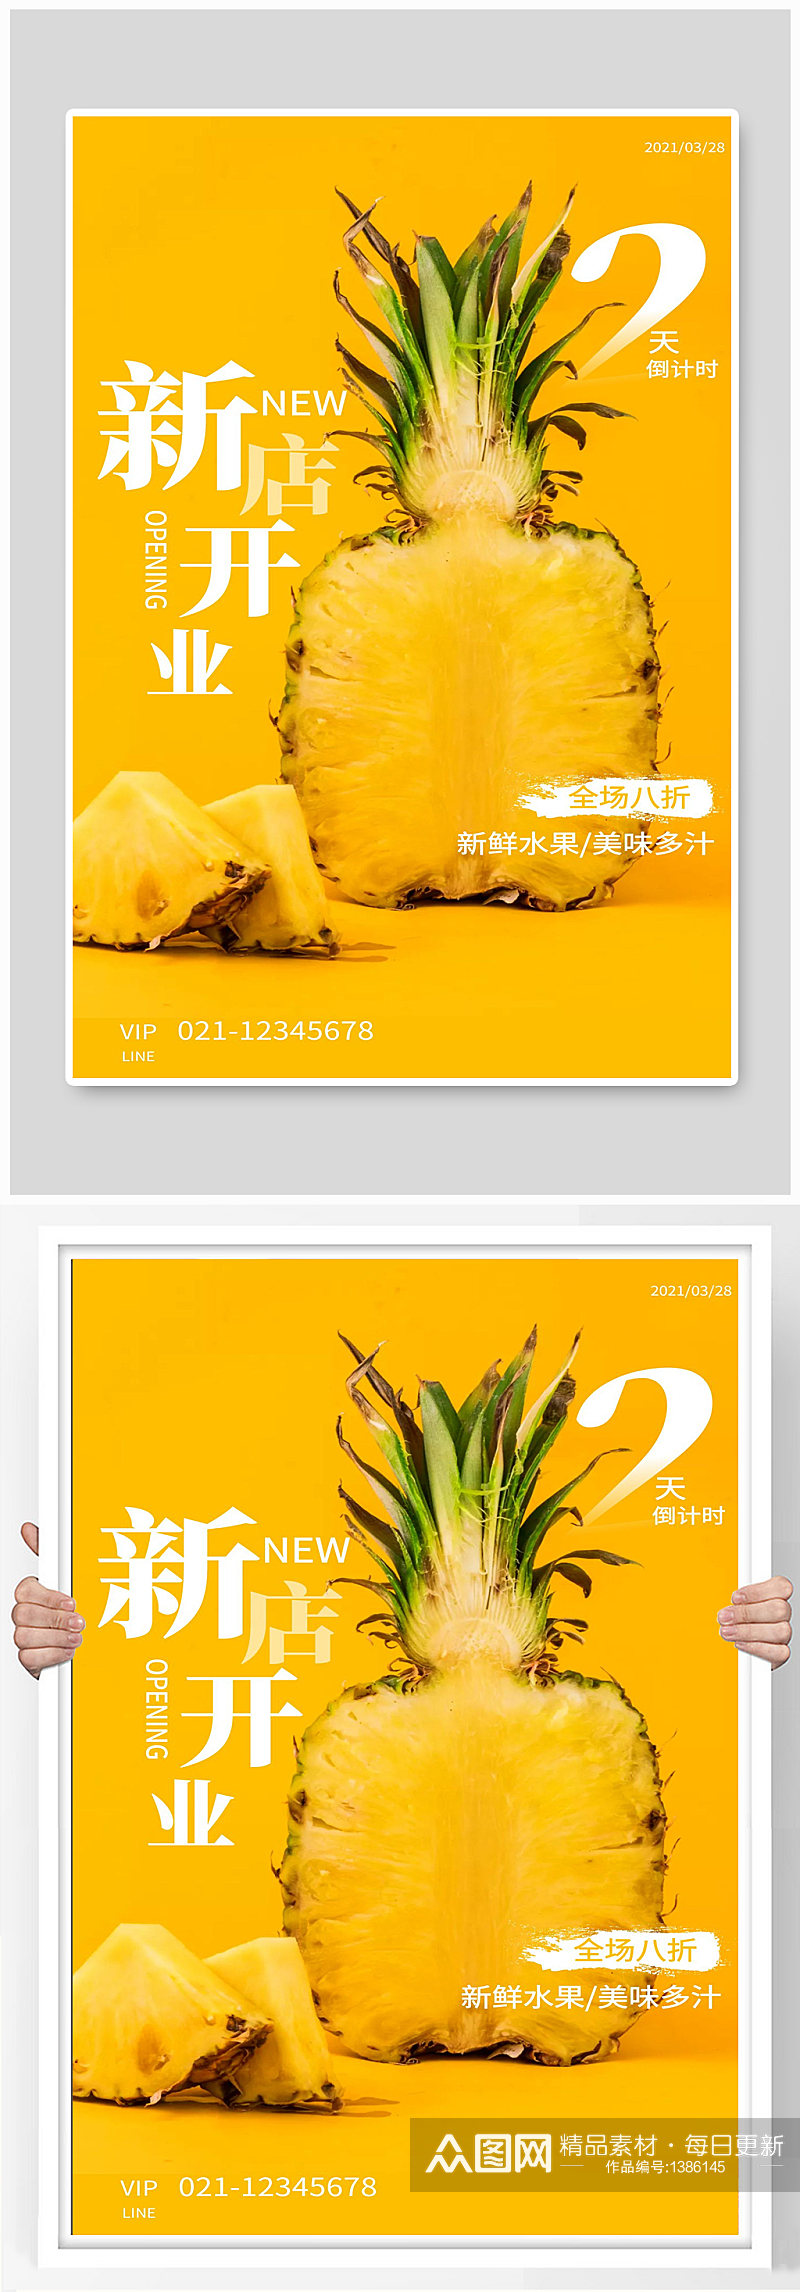 新店开业水果菠萝宣传海报素材